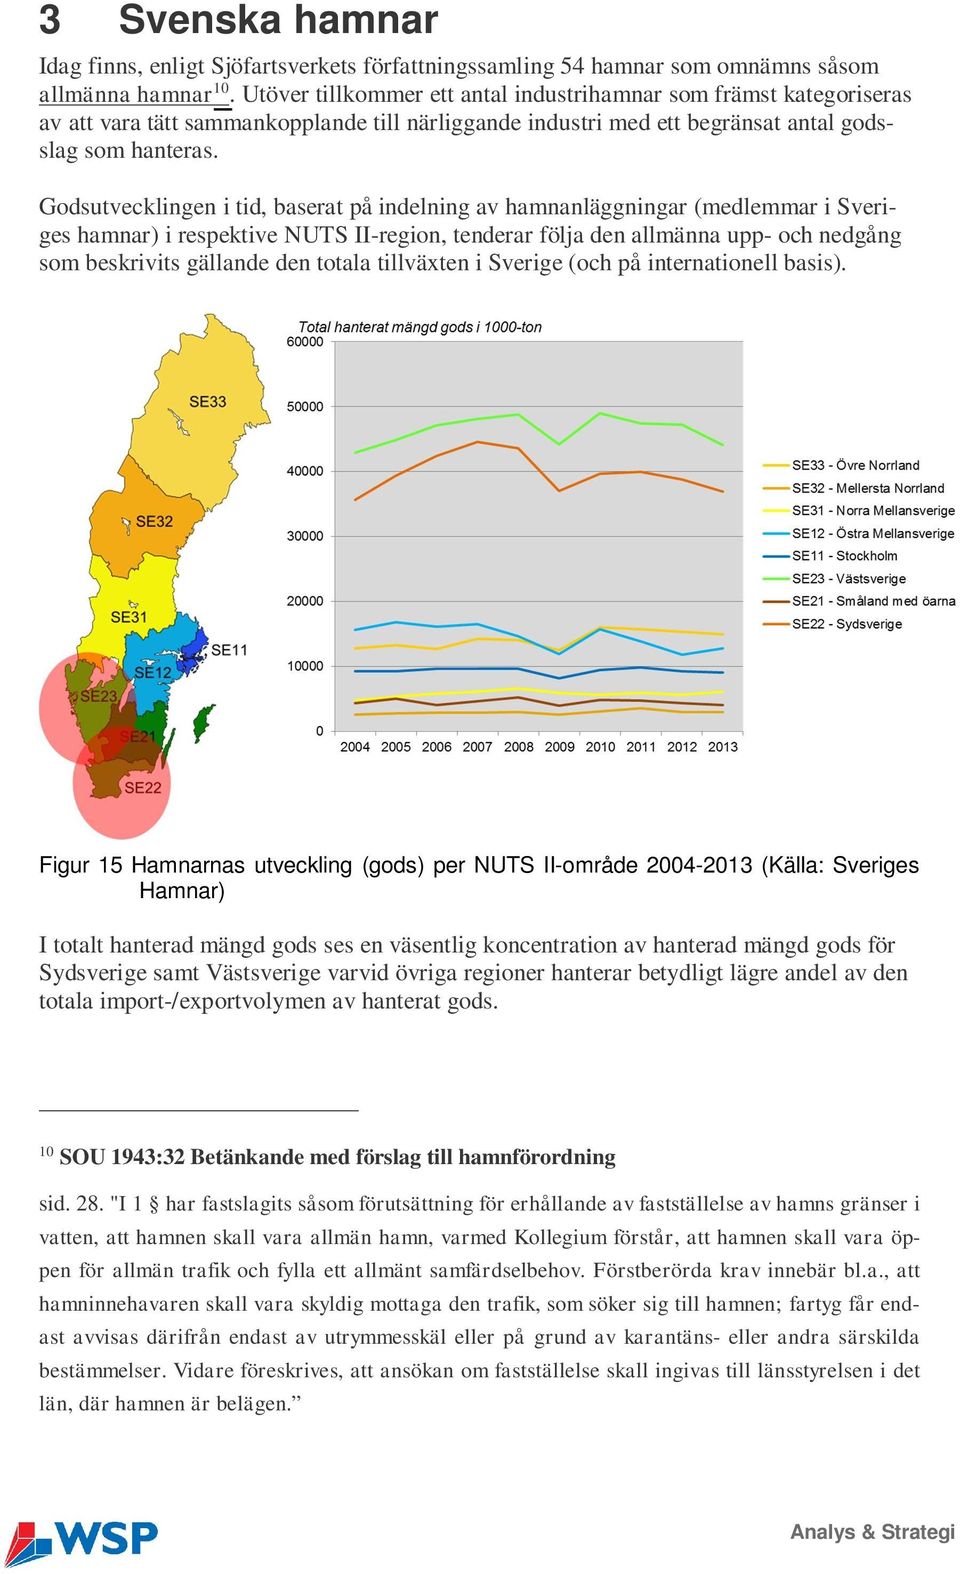 Godsutvecklingen i tid, baserat på indelning av hamnanläggningar (medlemmar i Sveriges hamnar) i respektive NUTS II-region, tenderar följa den allmänna upp- och nedgång som beskrivits gällande den